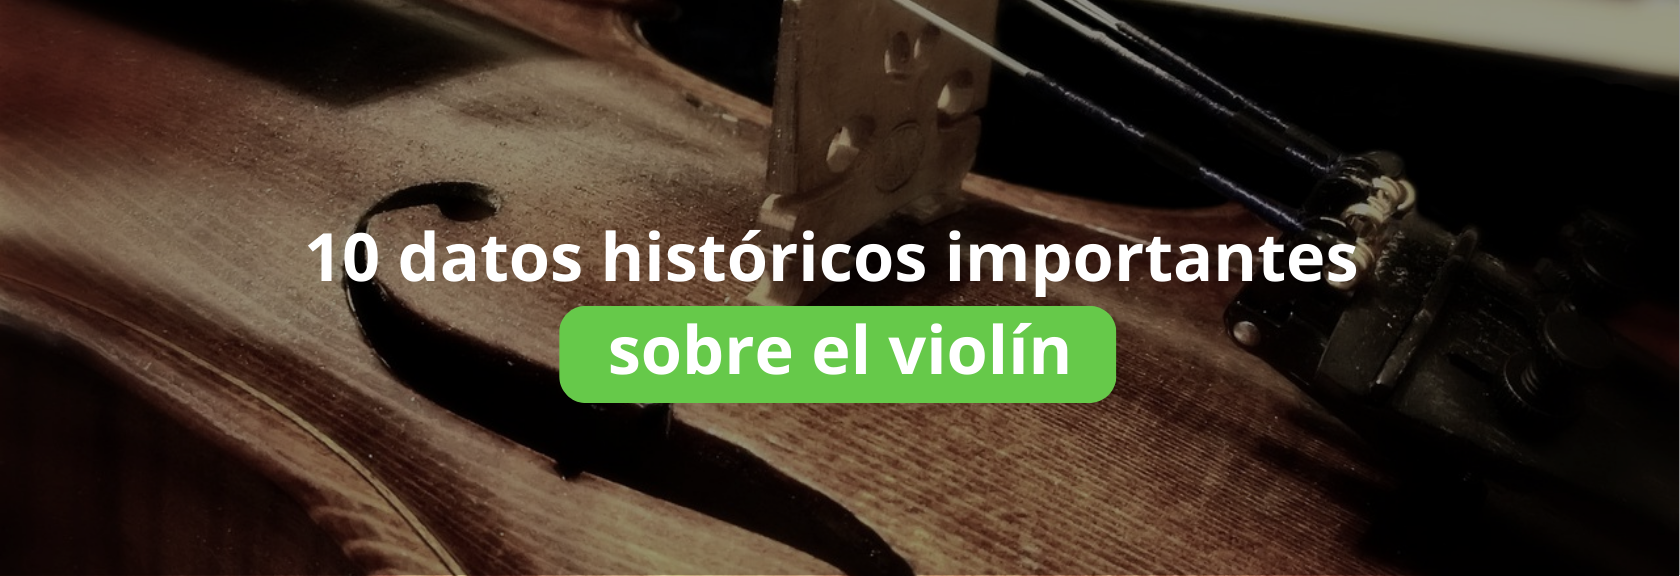 10-datos-historicos-importantes-sobre-el-violín